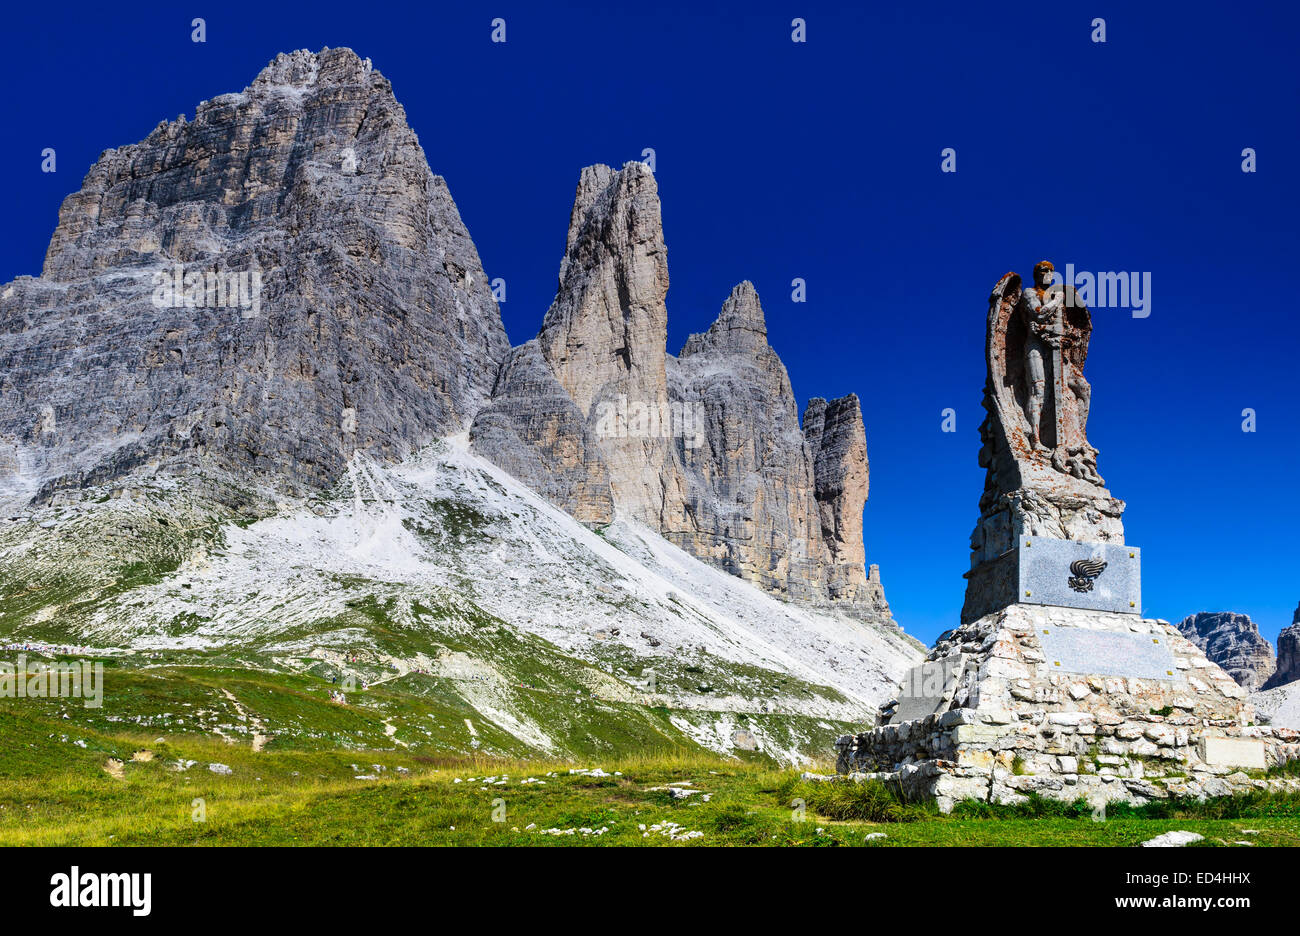 Blick auf den berühmten Tre Cime di Lavaredo, Drei Zinnen in den Dolomiten, eines der bekannteste Berg in den europäischen Alpen Stockfoto